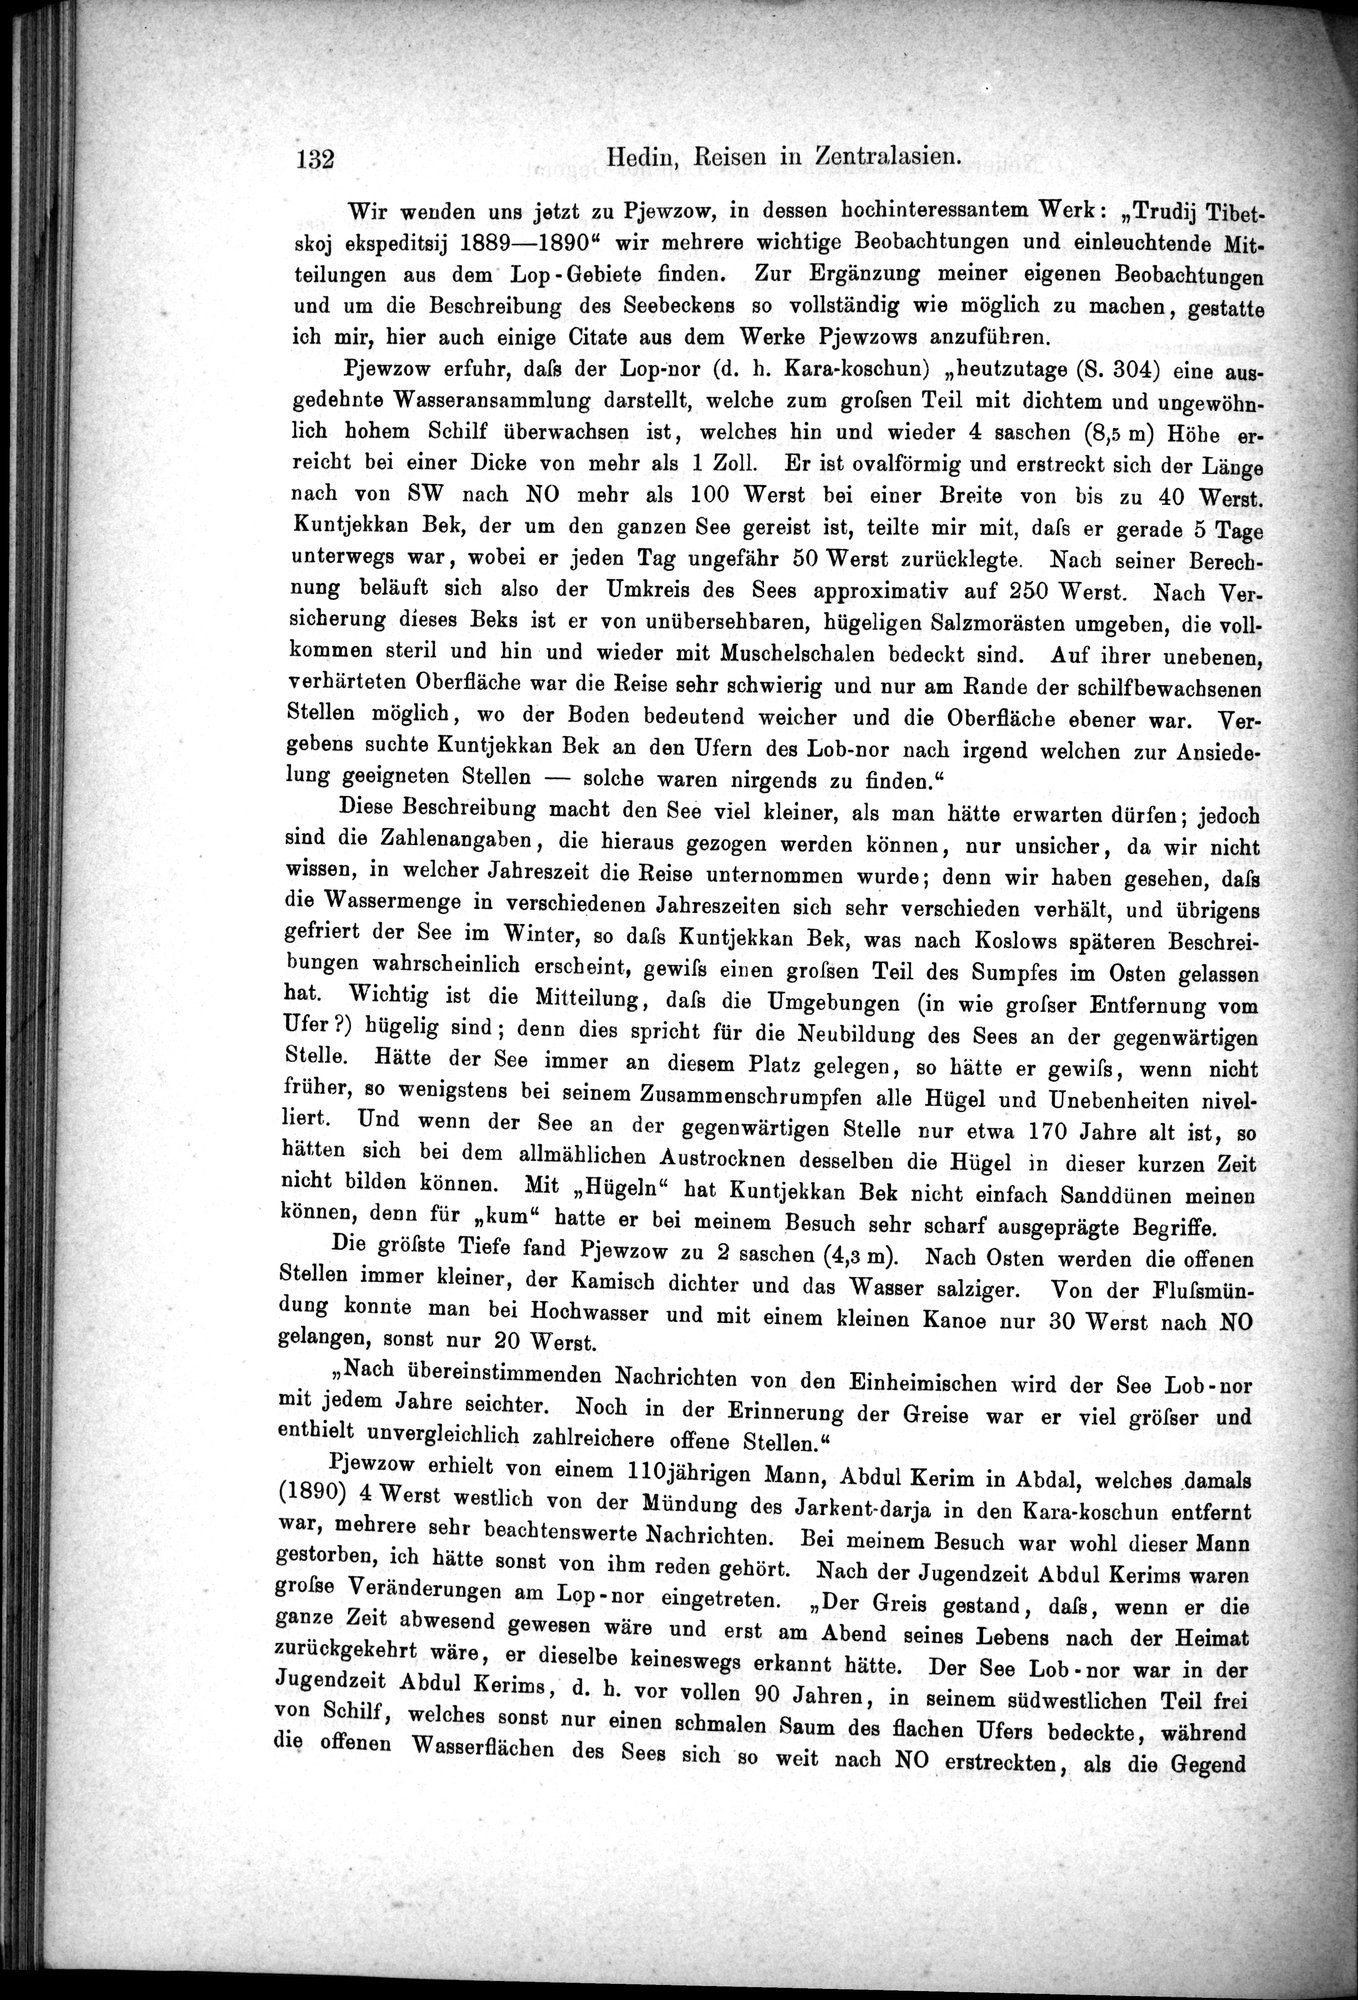 Die Geographische-Wissenschaftlichen Ergebnisse meiner Reisen in Zentralasien, 1894-1897 : vol.1 / Page 144 (Grayscale High Resolution Image)